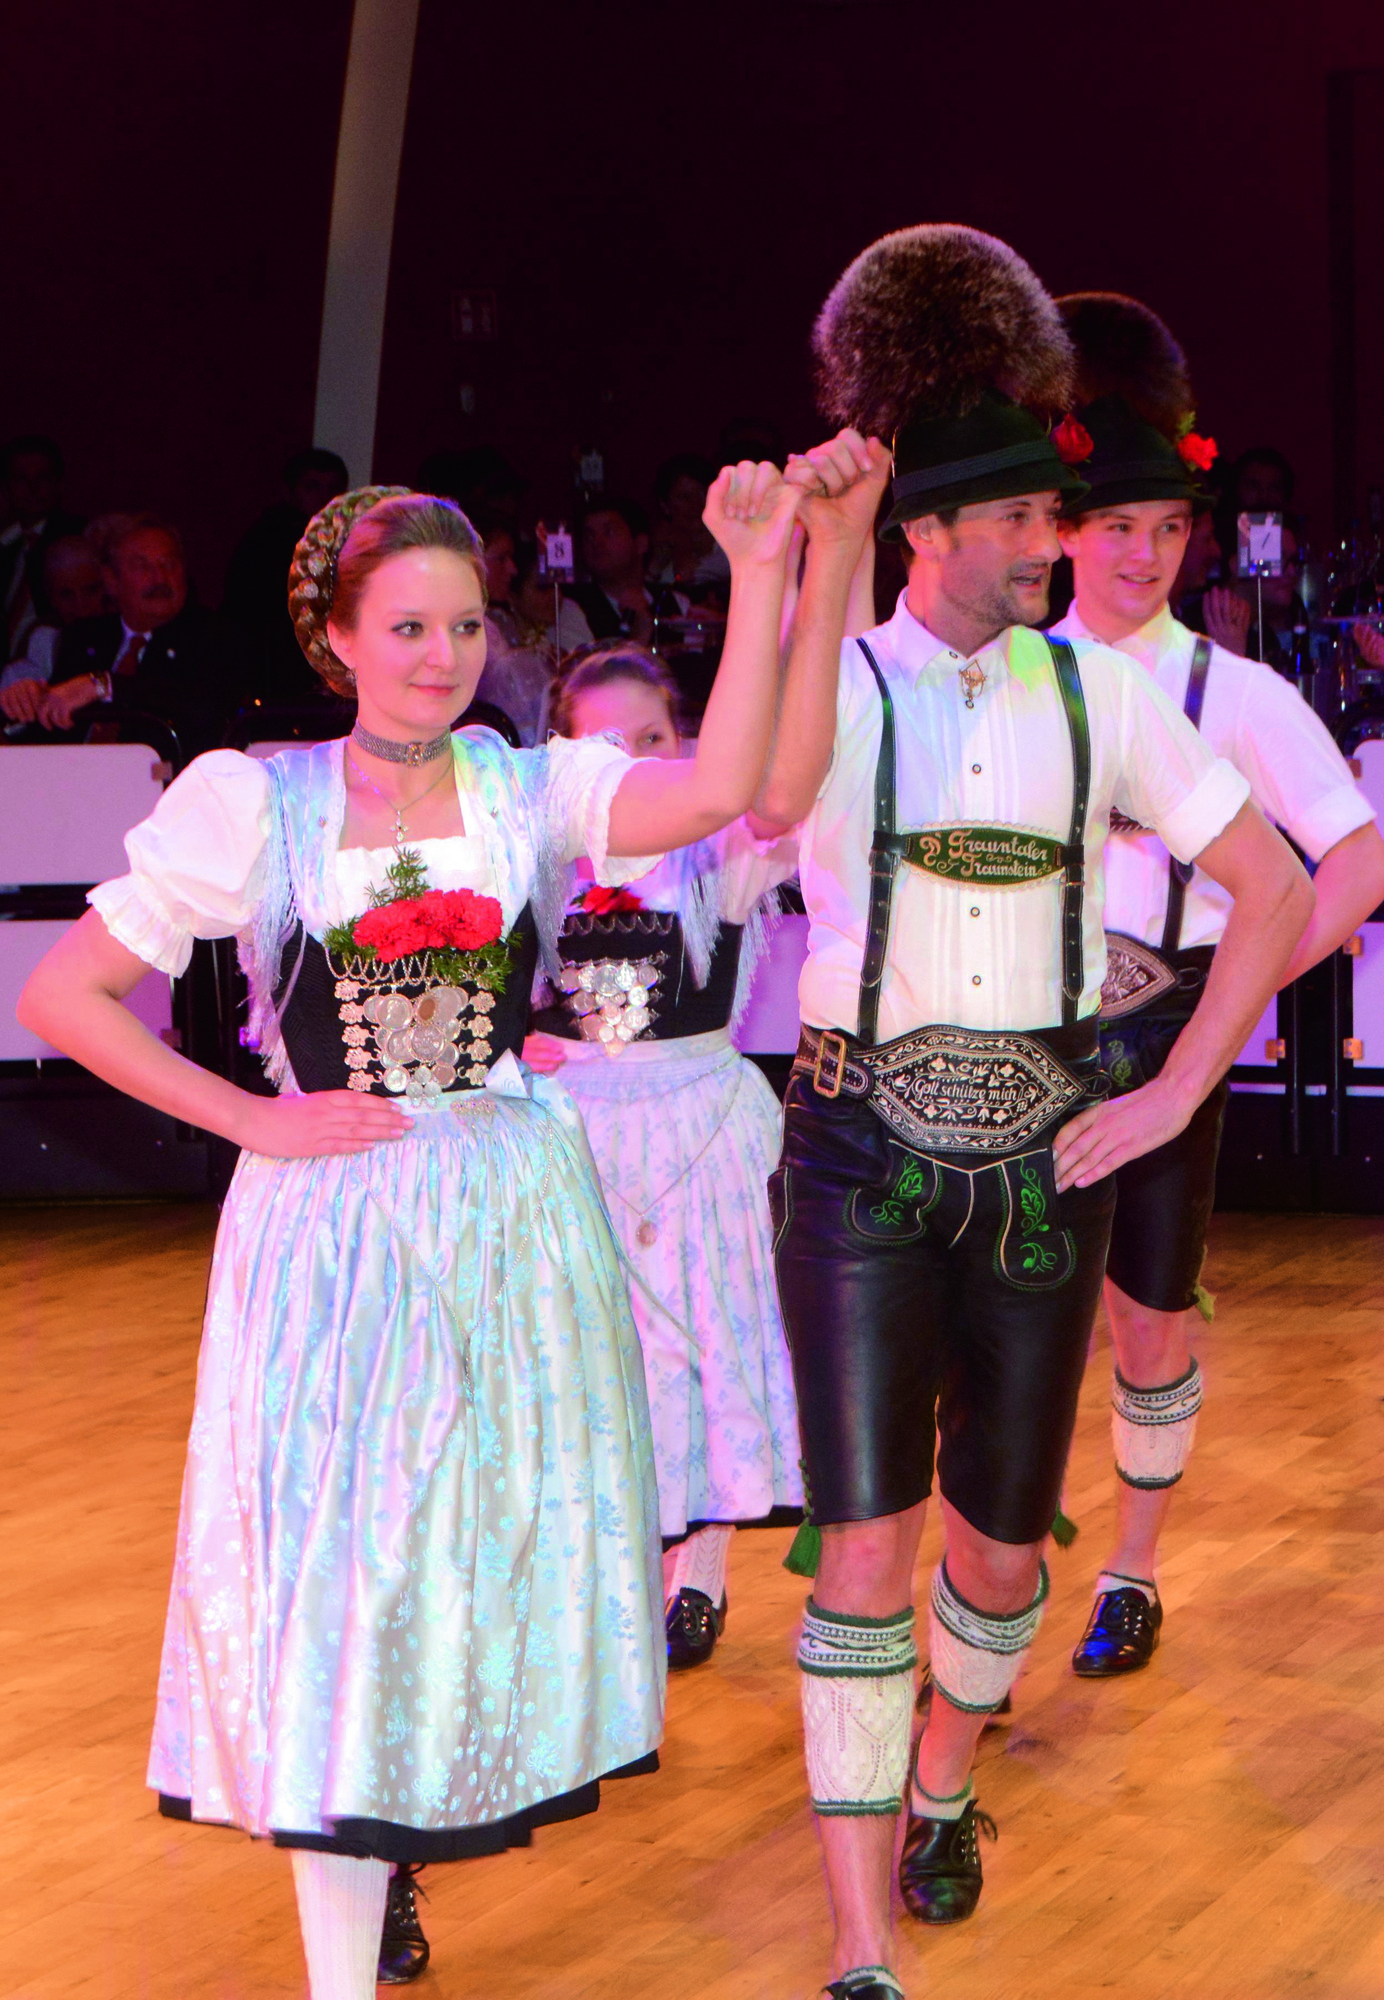 tanzendes Paar in traditioneller tracht auf oide wiesn ball im deutschen Theater © Münchner Festring